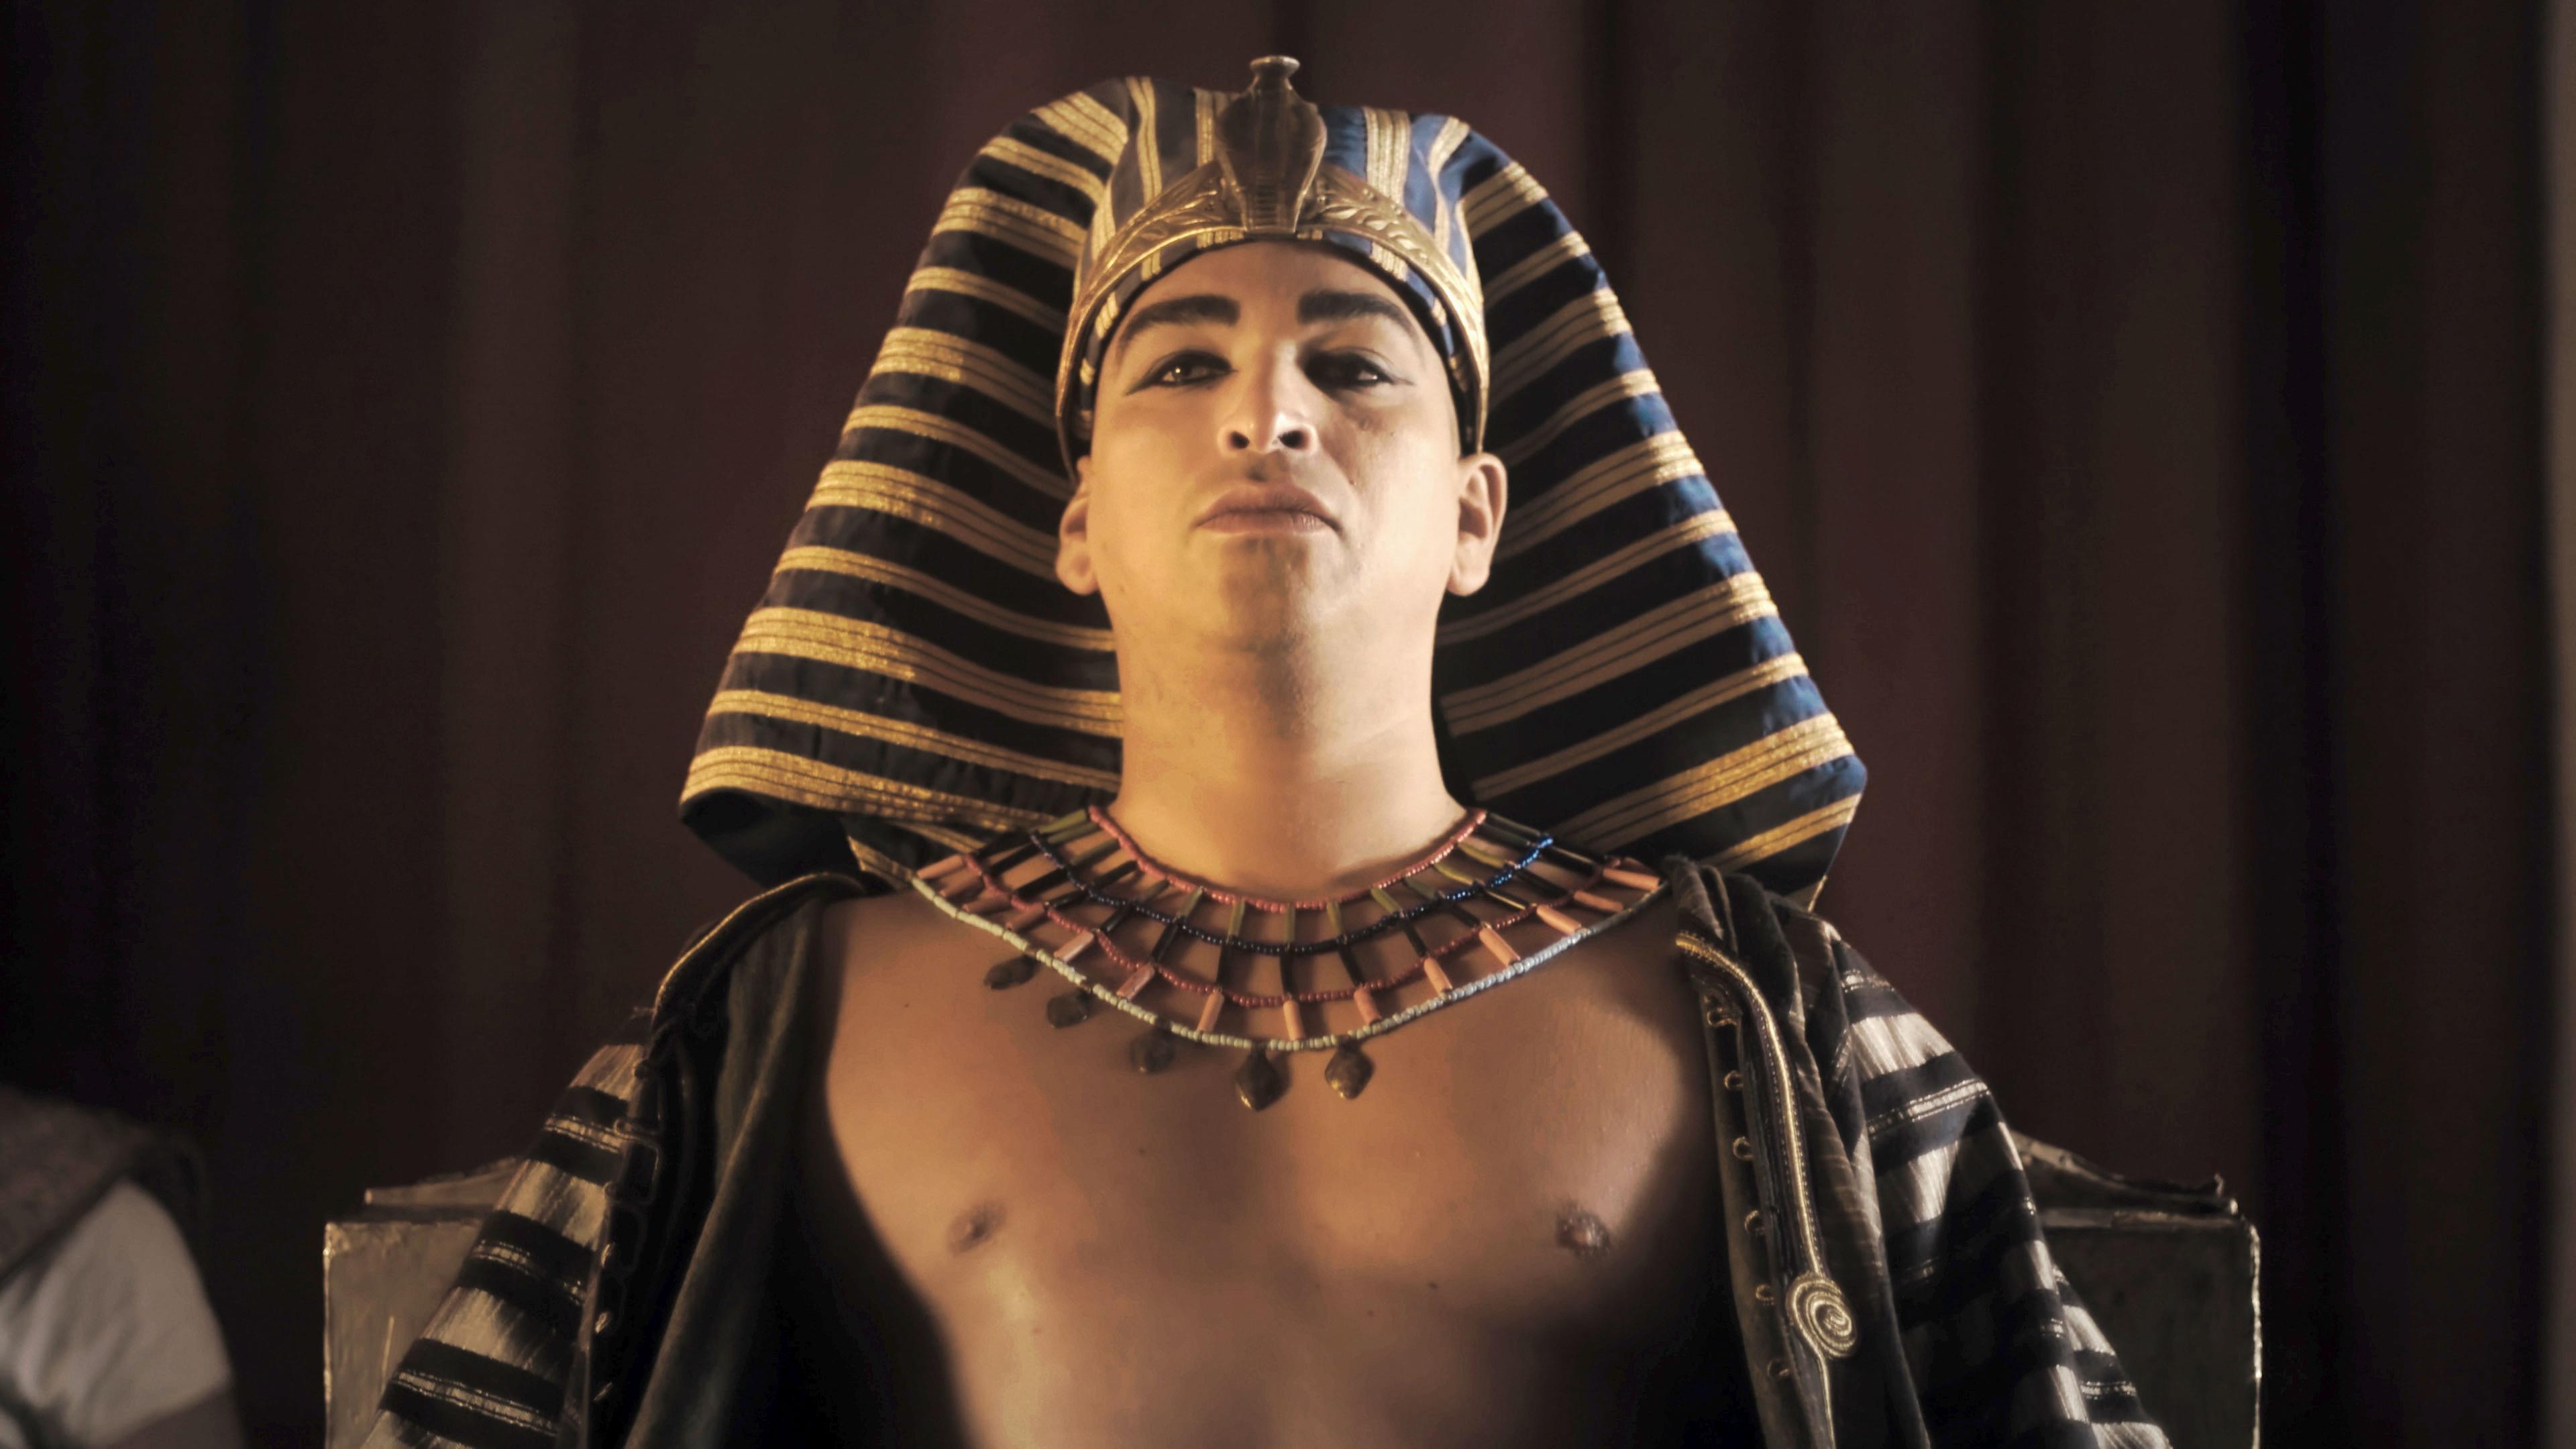  Spielszene. Pharao Snofru, auf dem Kopf ein gold-blau quergestreiftes Nemes-Kopftuch mit goldenem Stirnring mit einer Kobra. Um den Hals ein breiter mit bunten Steinen verzierter Goldkragen. Die Brust ist nackt, über den Schultern hängt ein gold-blau quergestreifter Umhang.